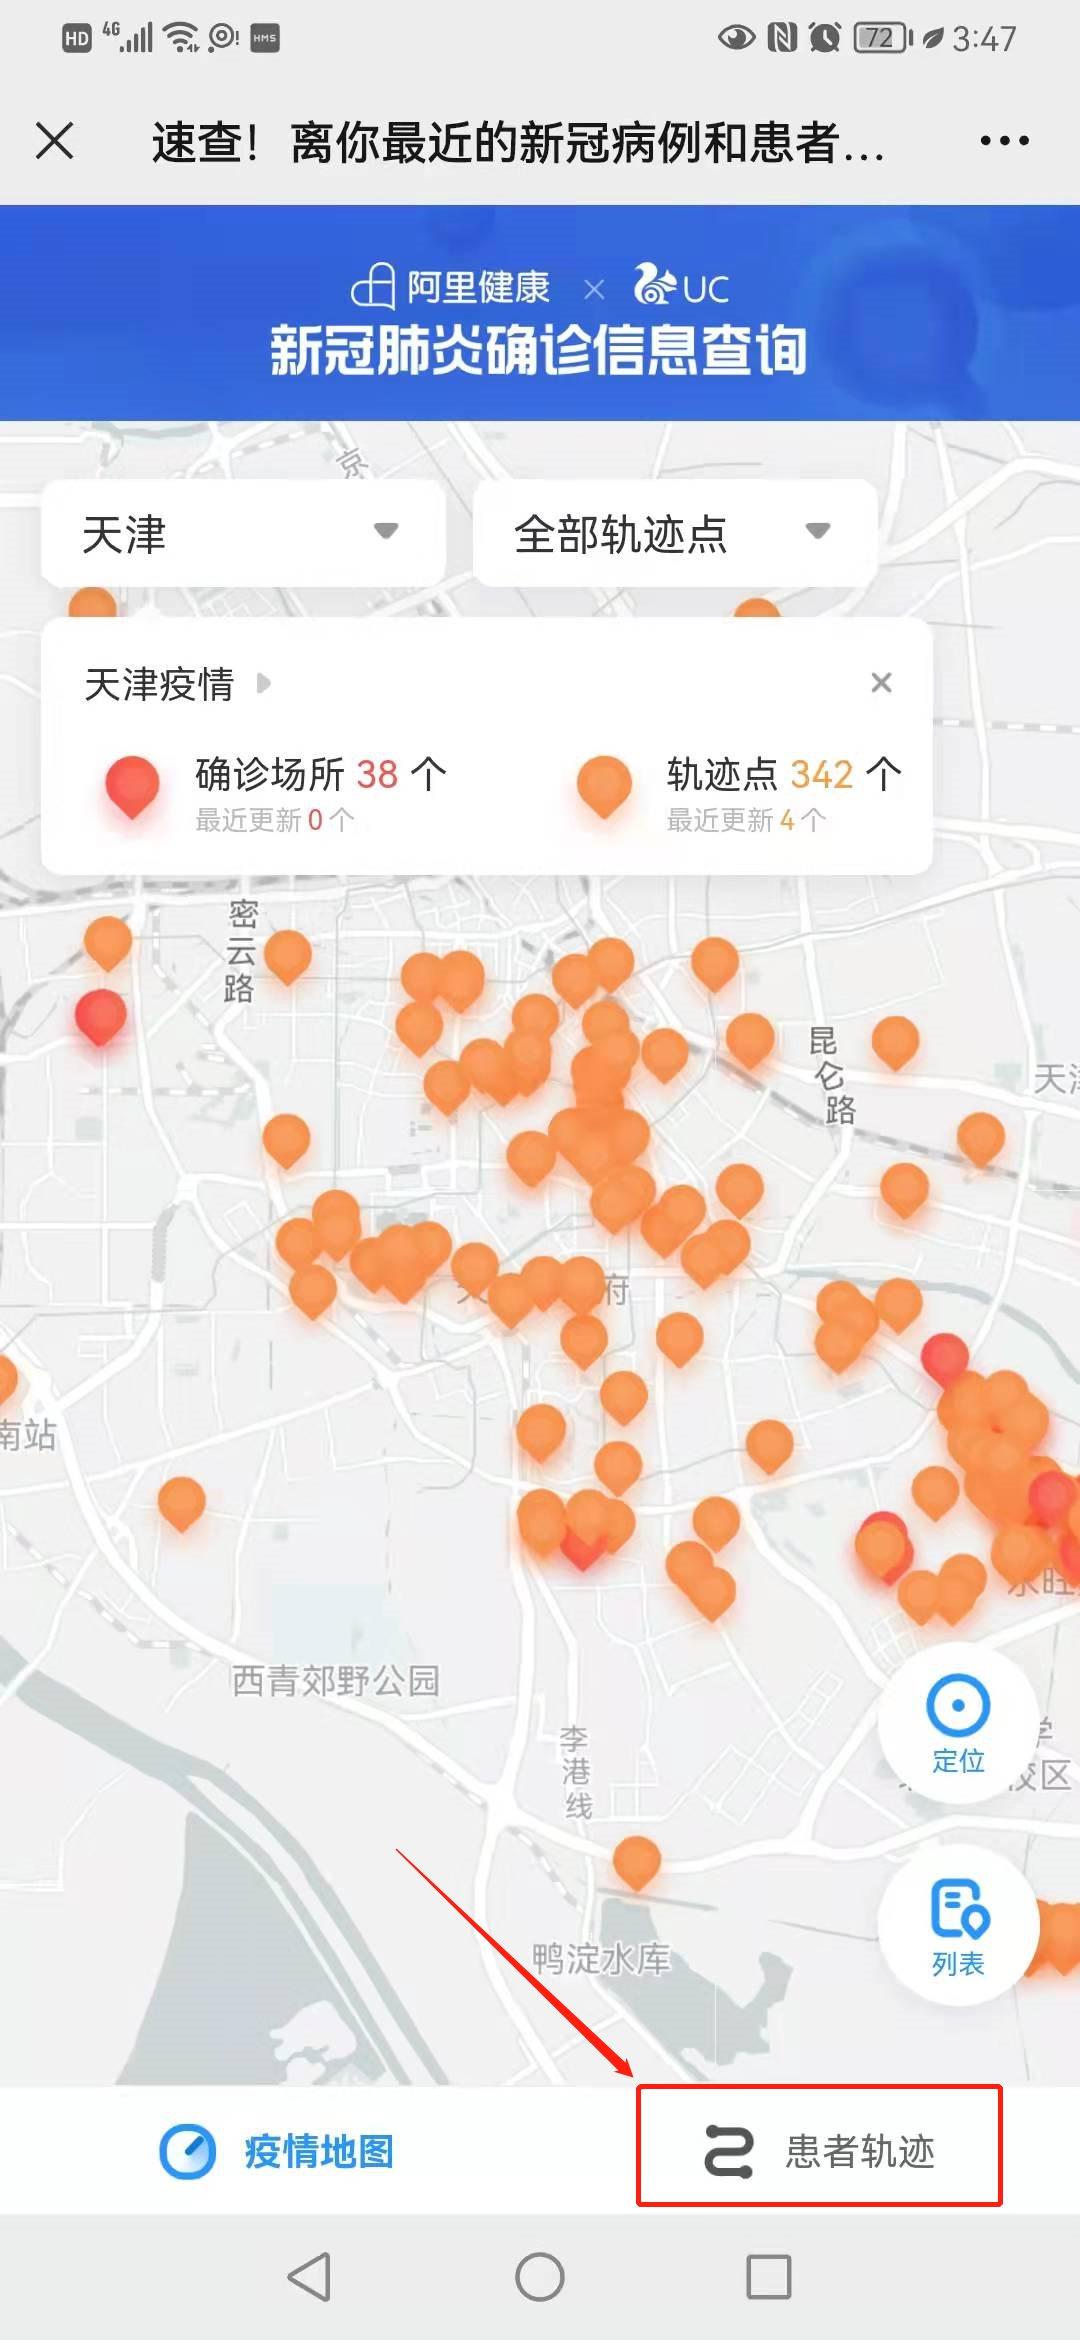 天津最新疫情地图图片